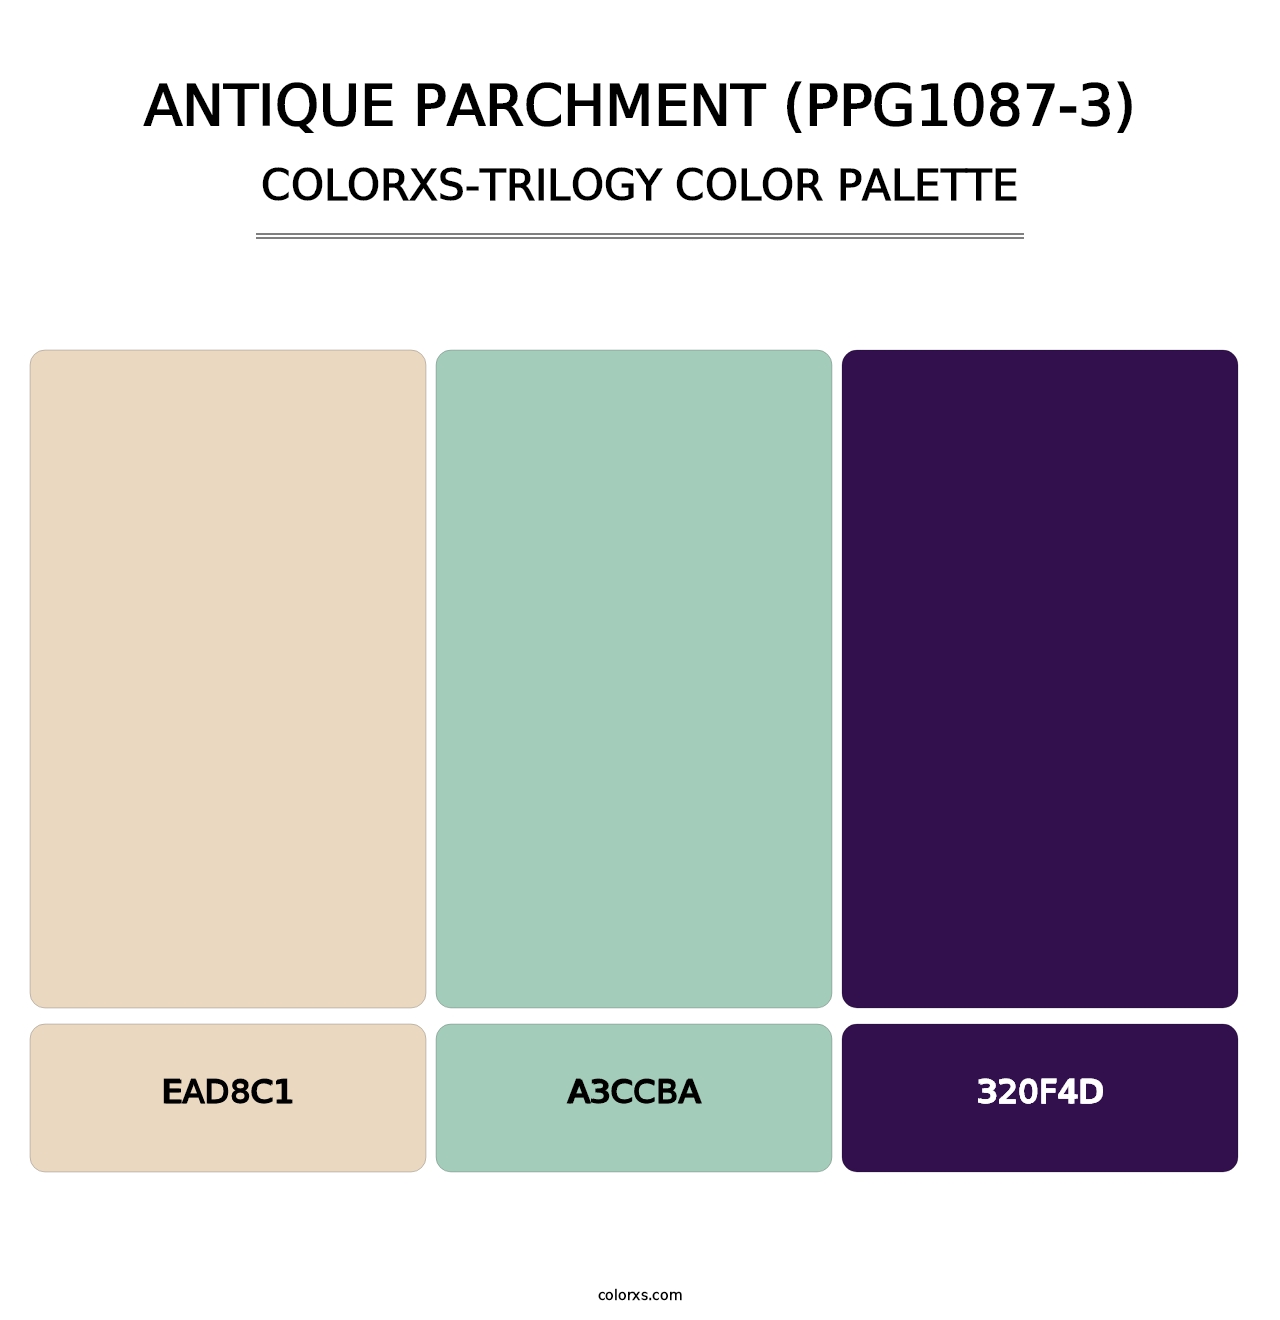 Antique Parchment (PPG1087-3) - Colorxs Trilogy Palette